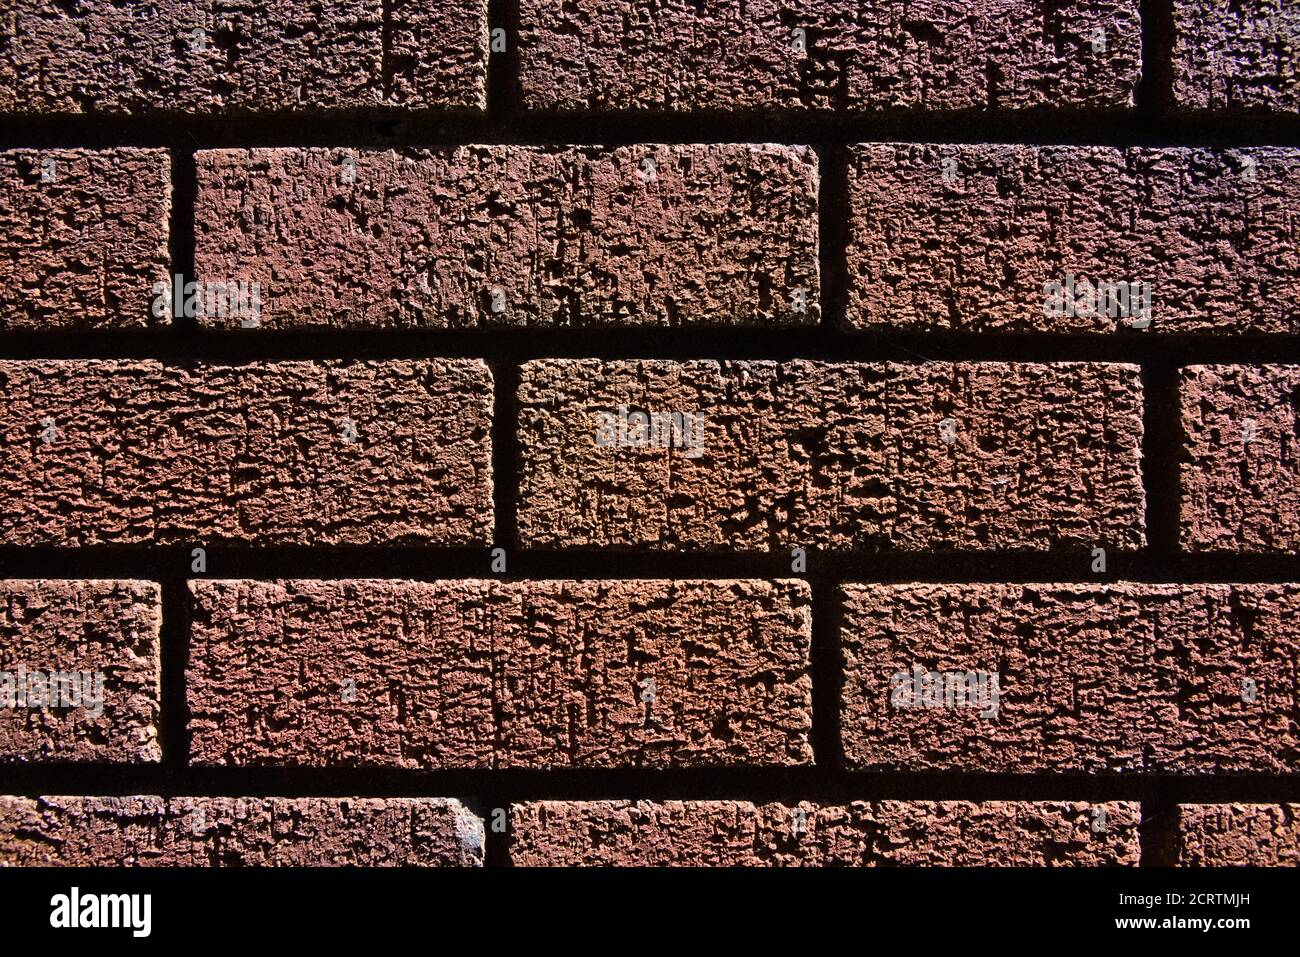 2 - texture abstraite gros plan d'un mur de briques rouges ombres et lumières vives font l'image contrastée. Grain fin et structure visibles. Horizontale. Banque D'Images